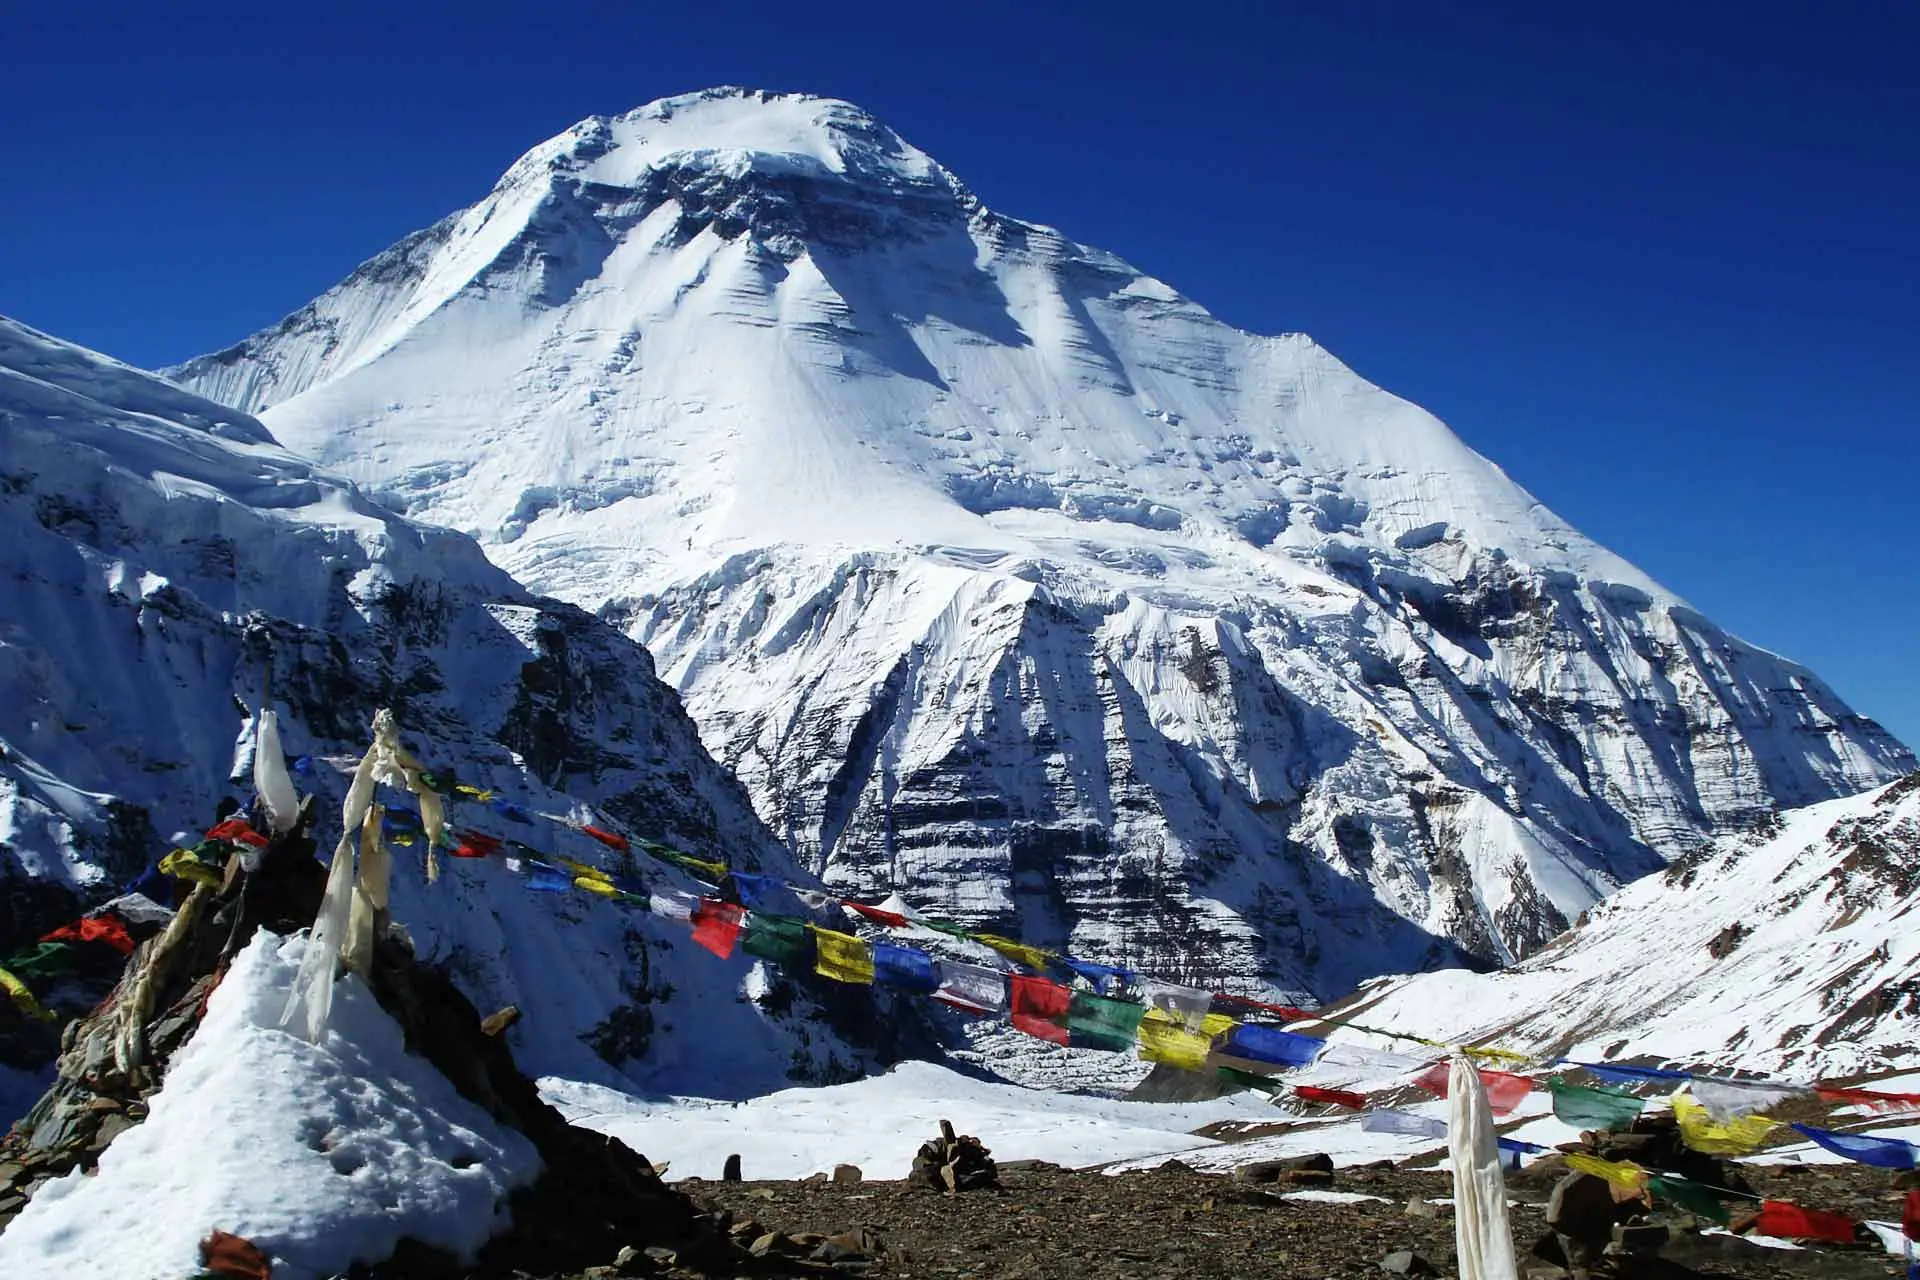 Дхаулагірі (Dhaulagiri) з Французського перевалу (French Pass) на висоті 5370 метрів. Фото: Himalayan Exploration